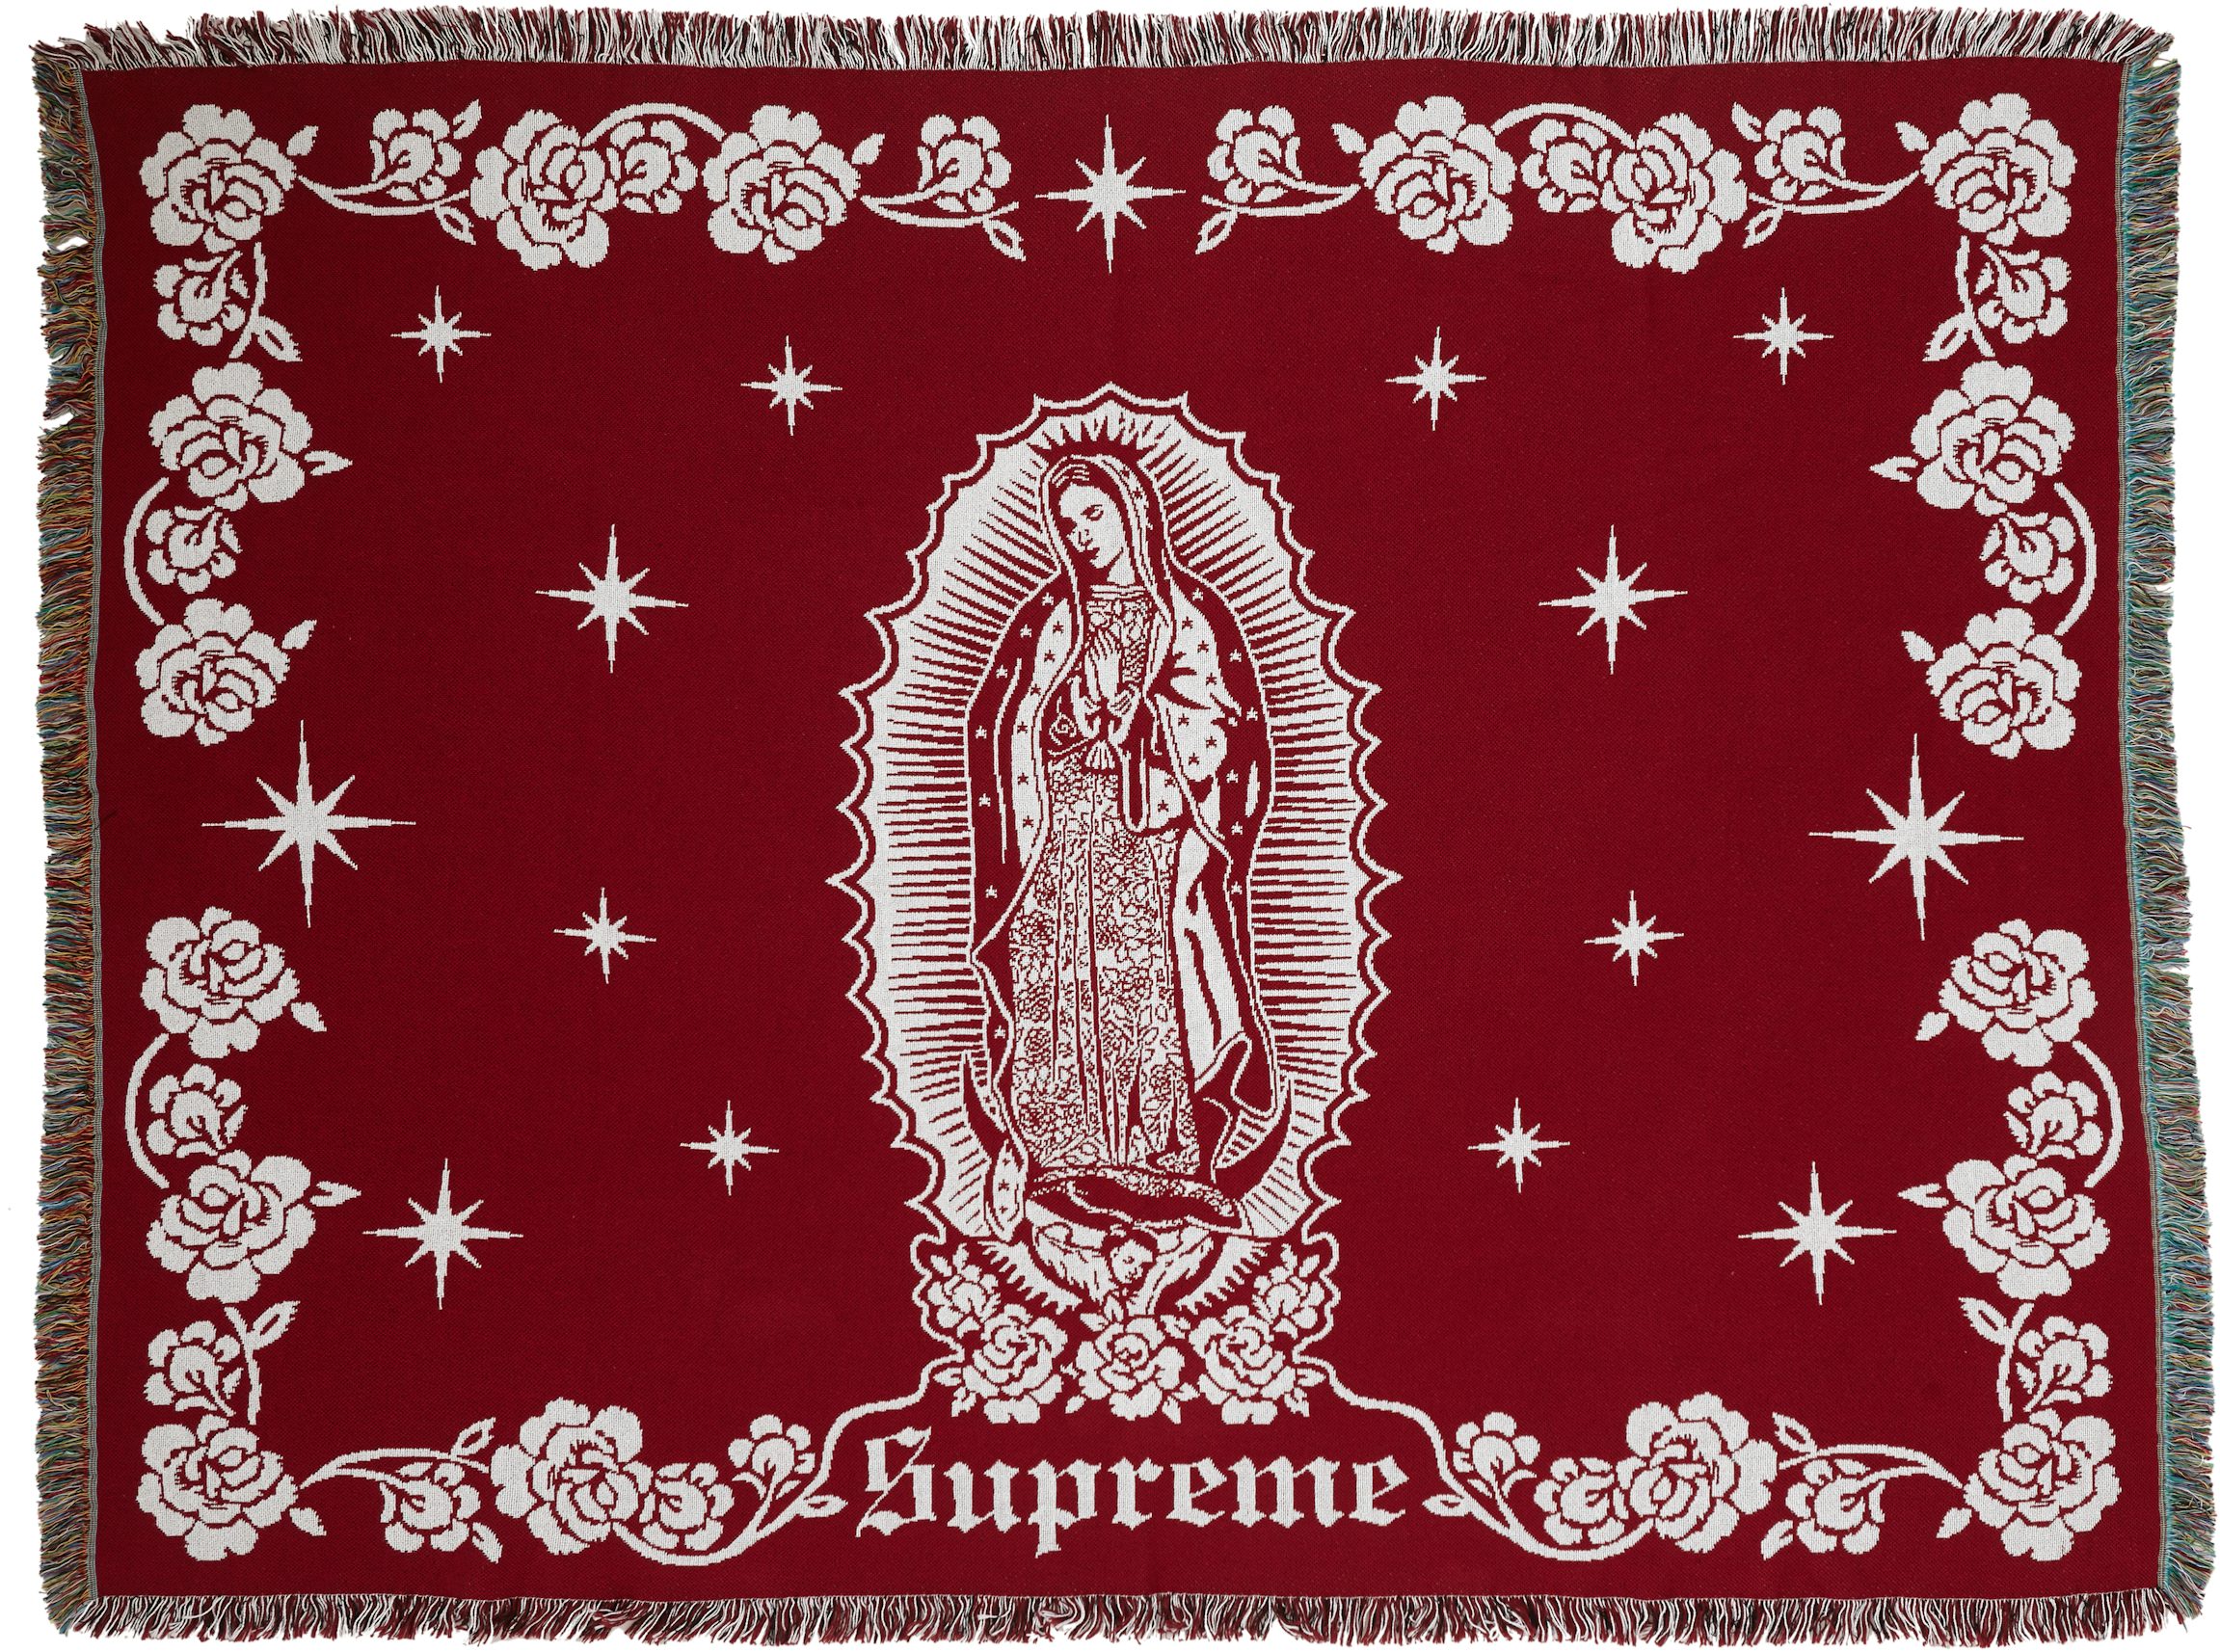 Supreme Acrylic Blankets